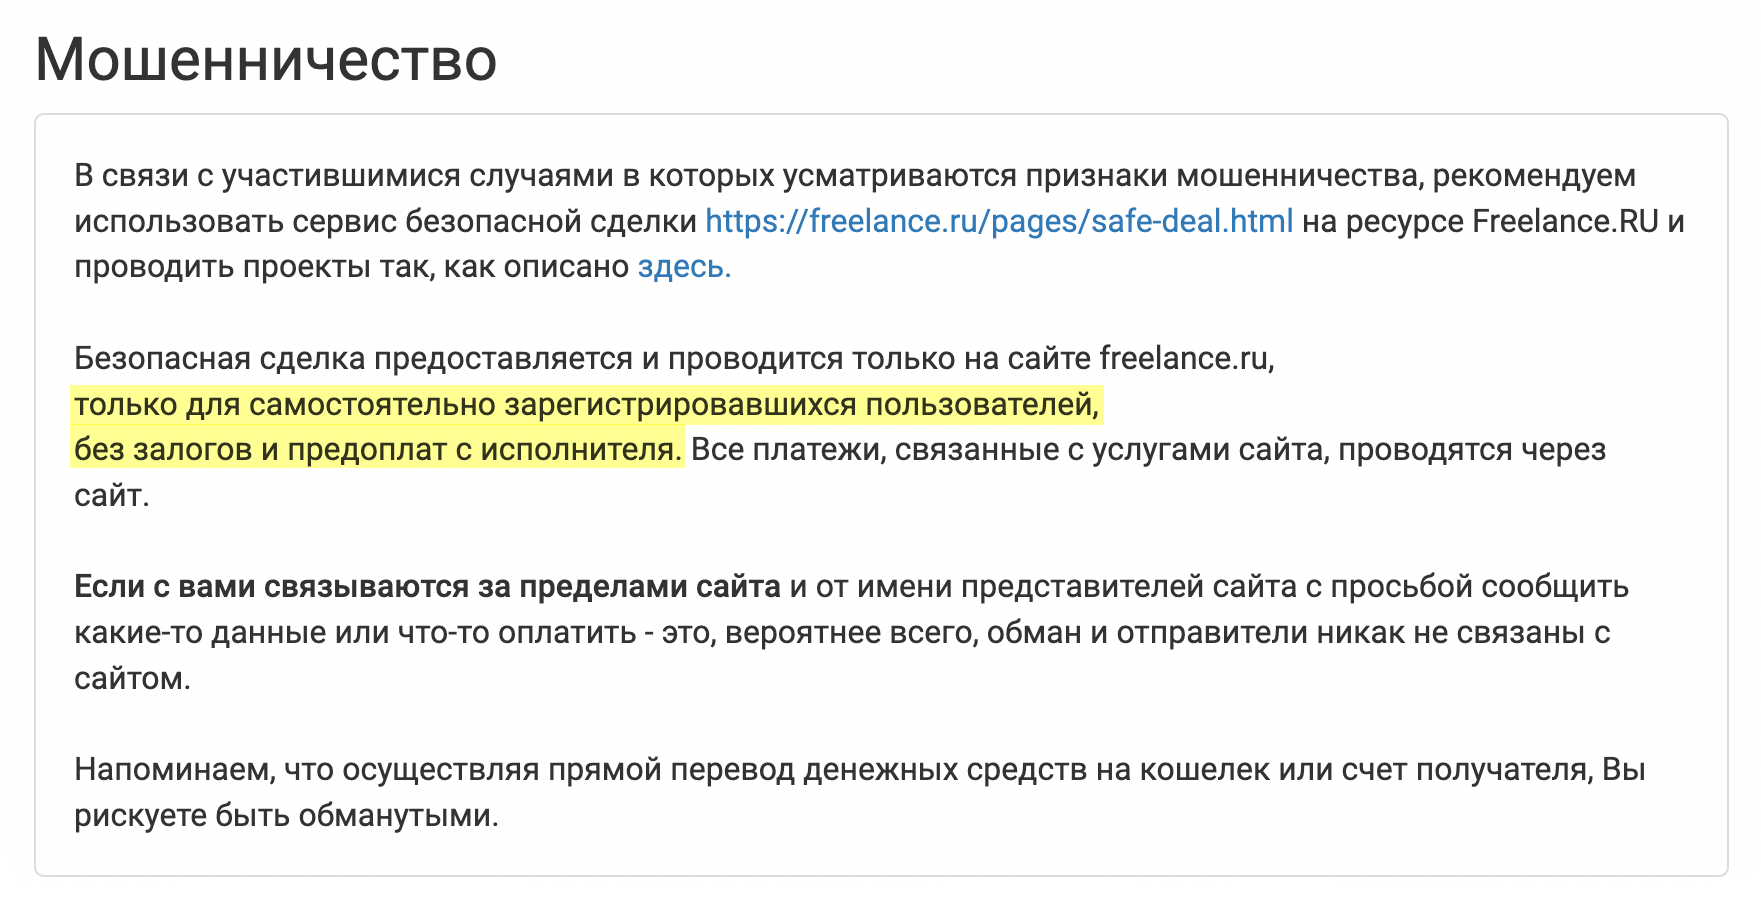 Жаль, что я не исследовала сайт «Фриланс⁠-⁠ру», прежде чем отправить деньги. В разделе о мошенничестве описывалась ситуация, в которой оказалась и я. Источник: freelance.ru